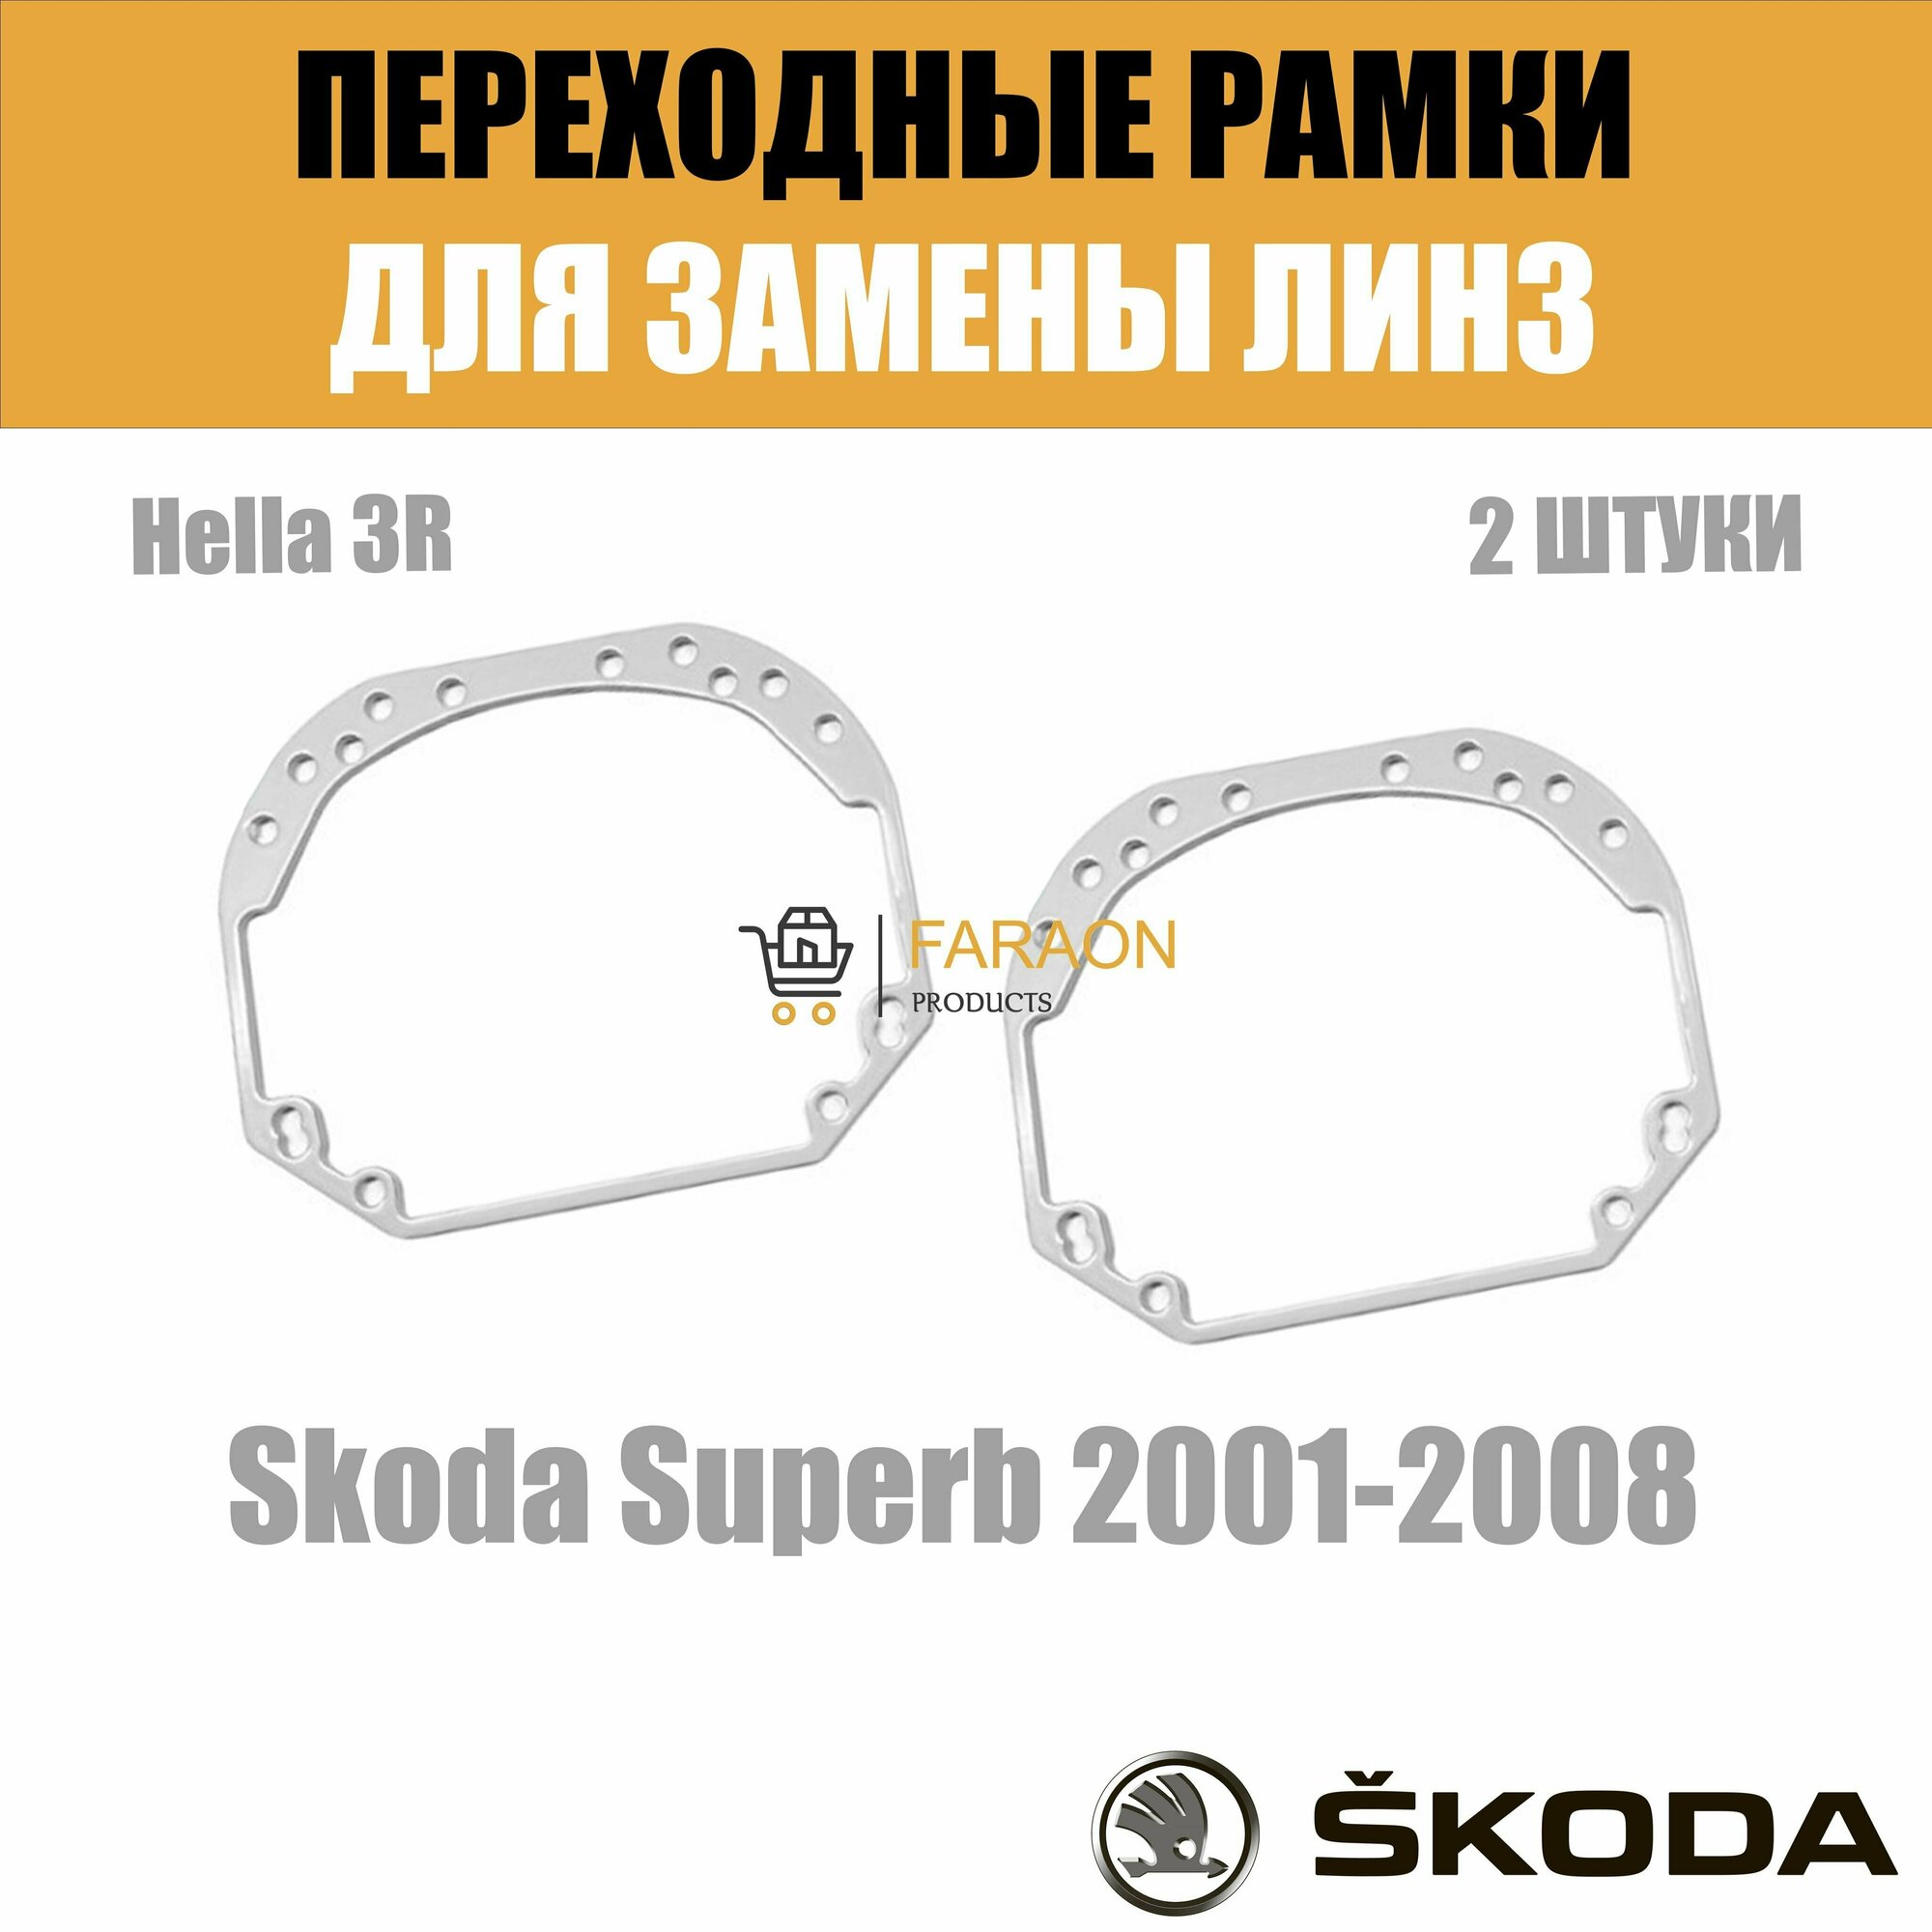 Переходные рамки для замены линз №1 на Skoda Superb 2001-2008 Крепление Hella 3R